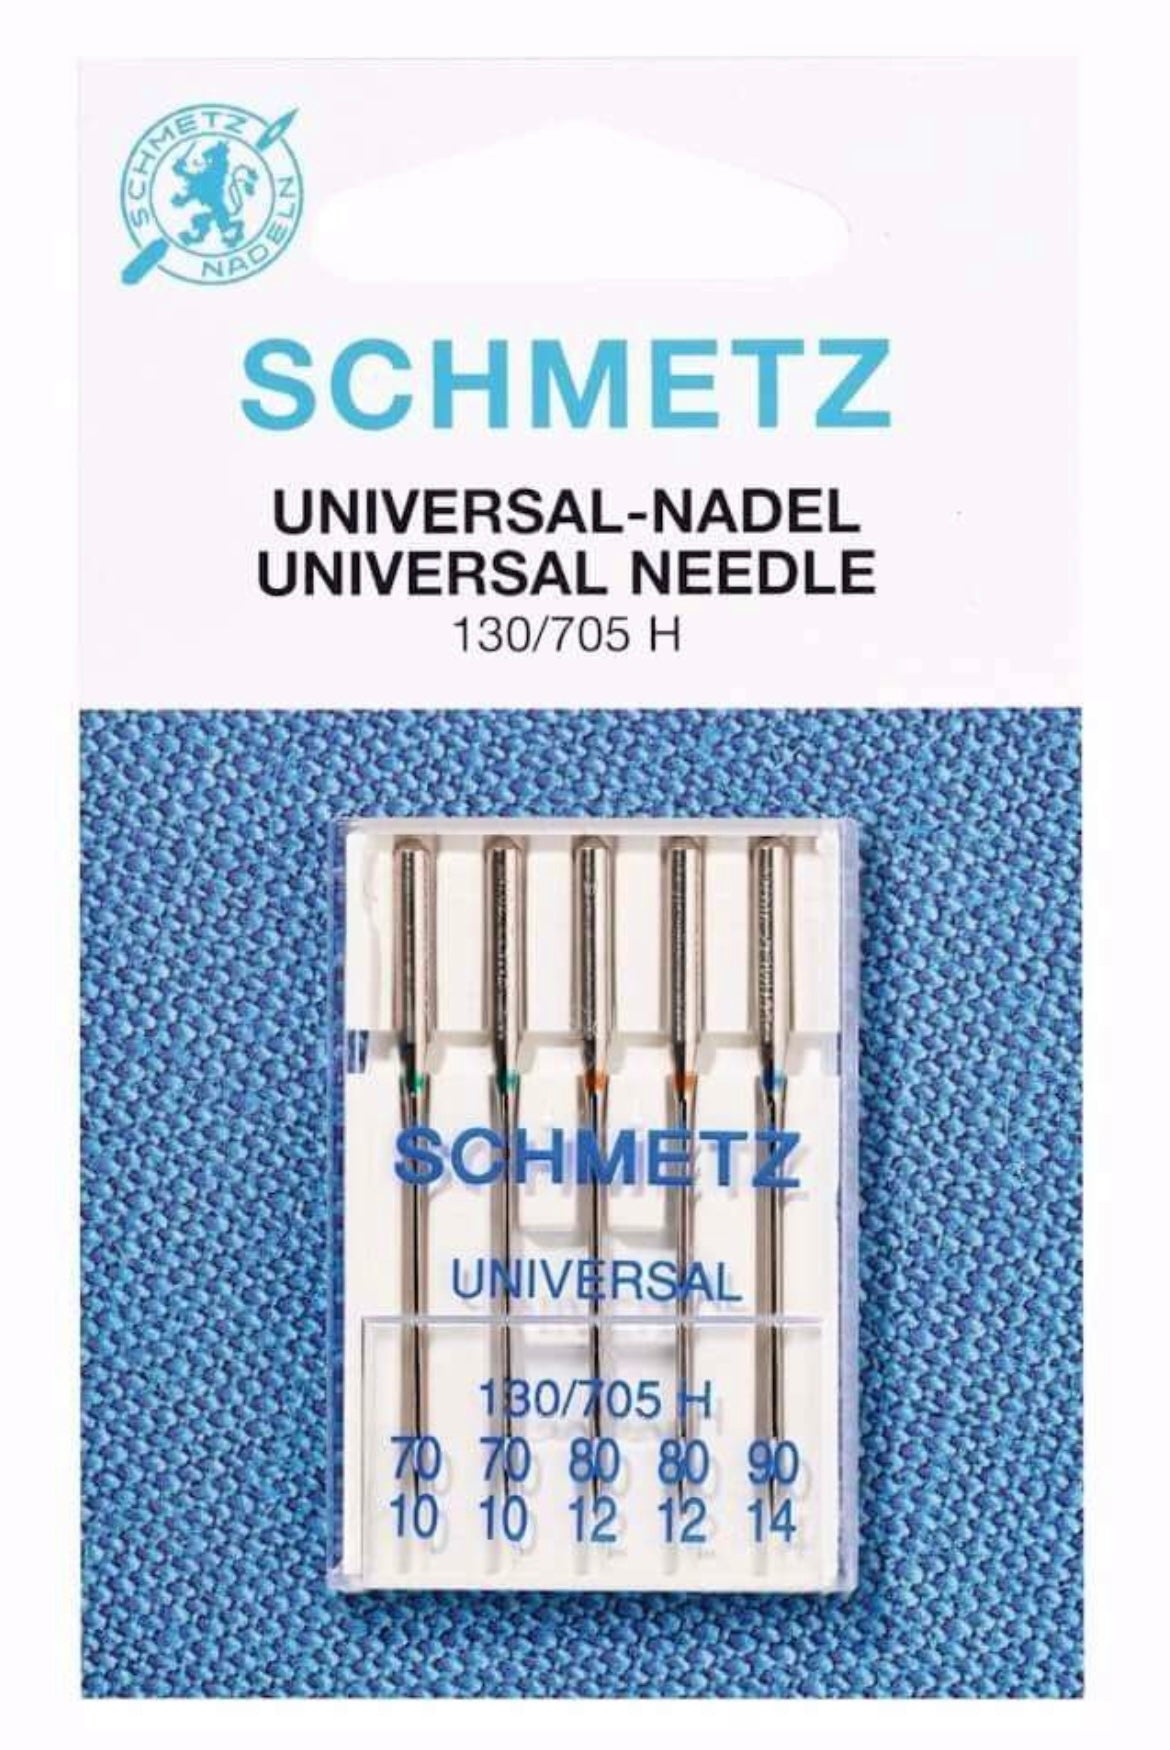 Schmetz Universal-Nadel 70-90